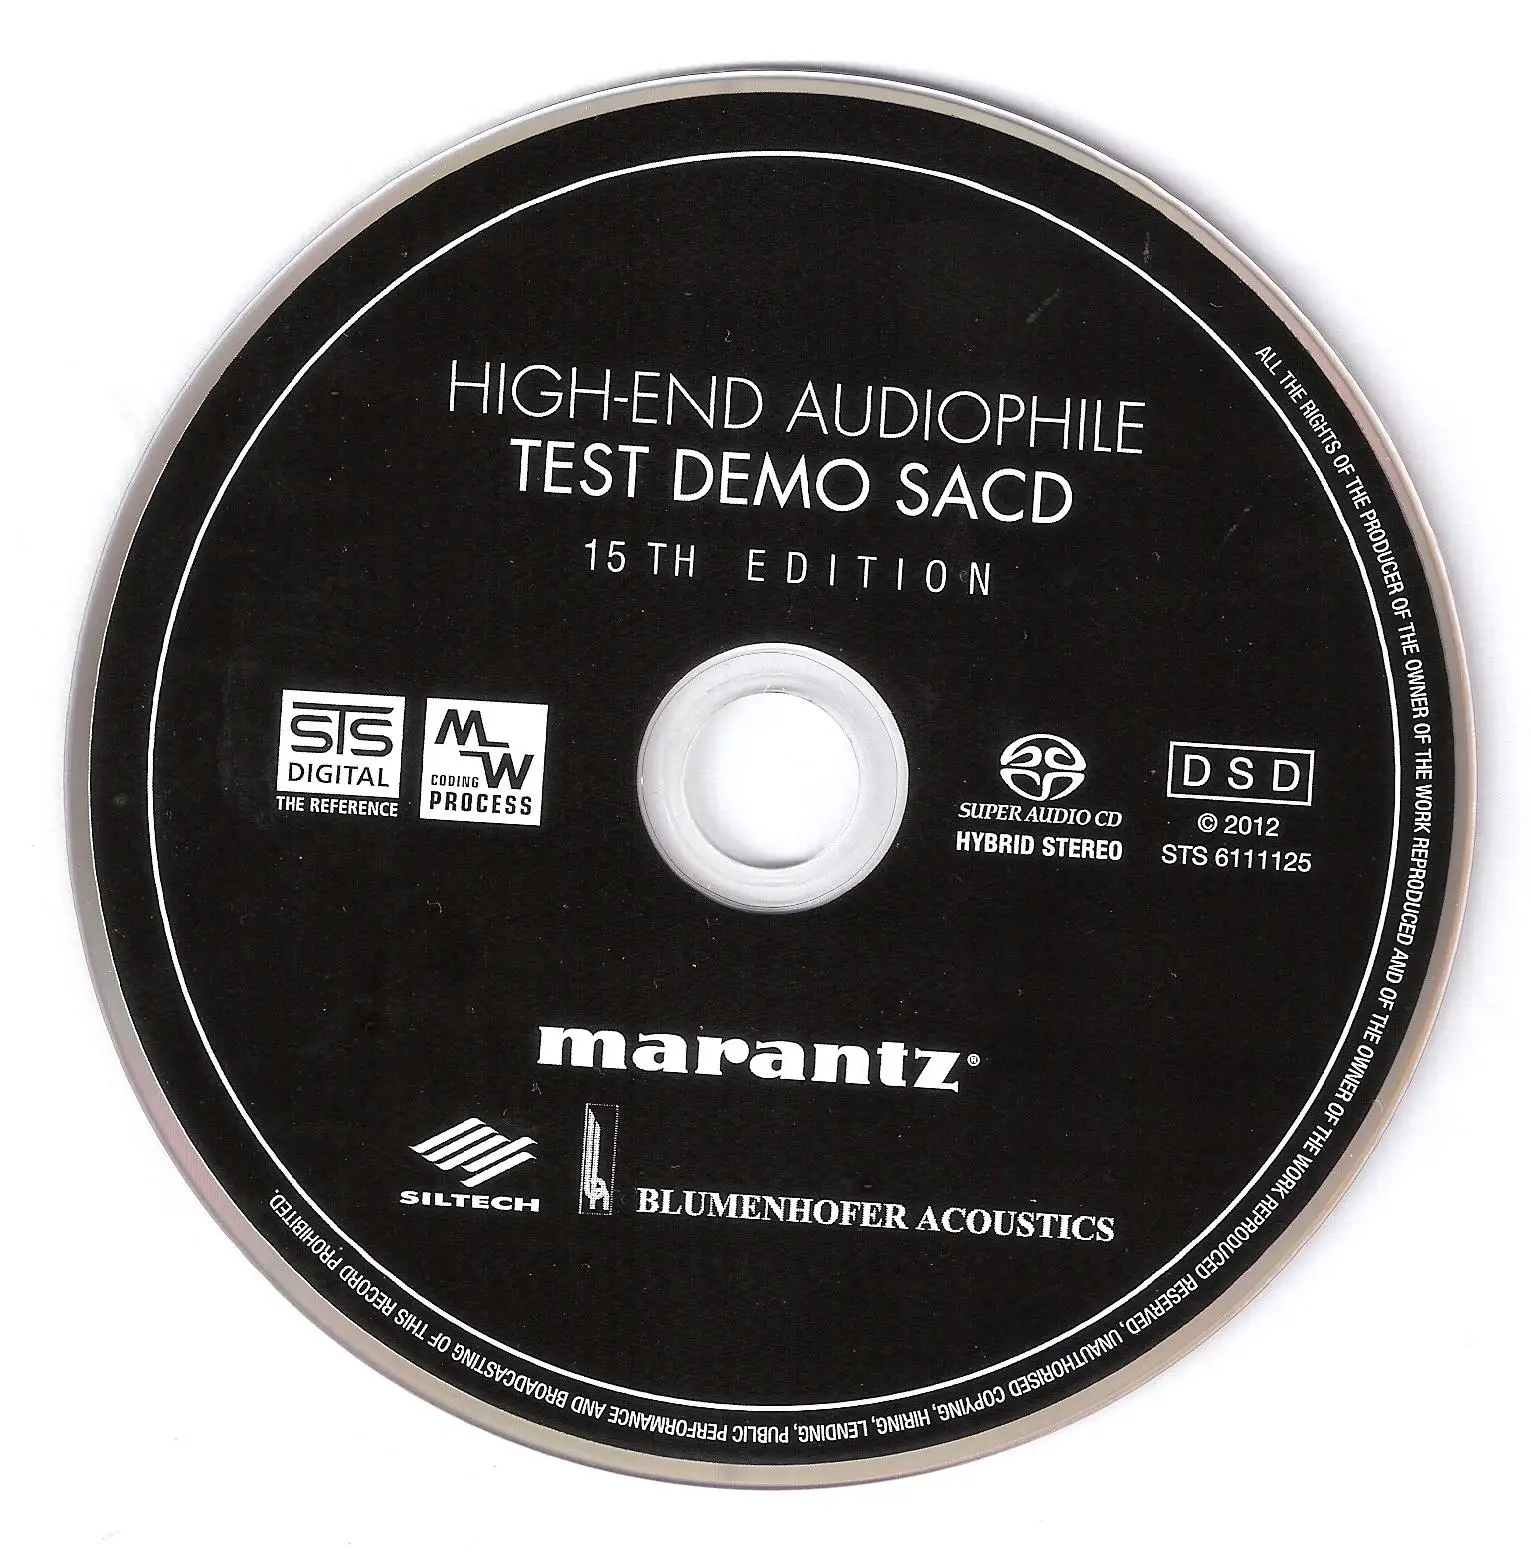 Va Marantz High End Audiophile Test Demo Sacd 15 Th Edition 2012 Sacd Ps3 Iso Avaxhome